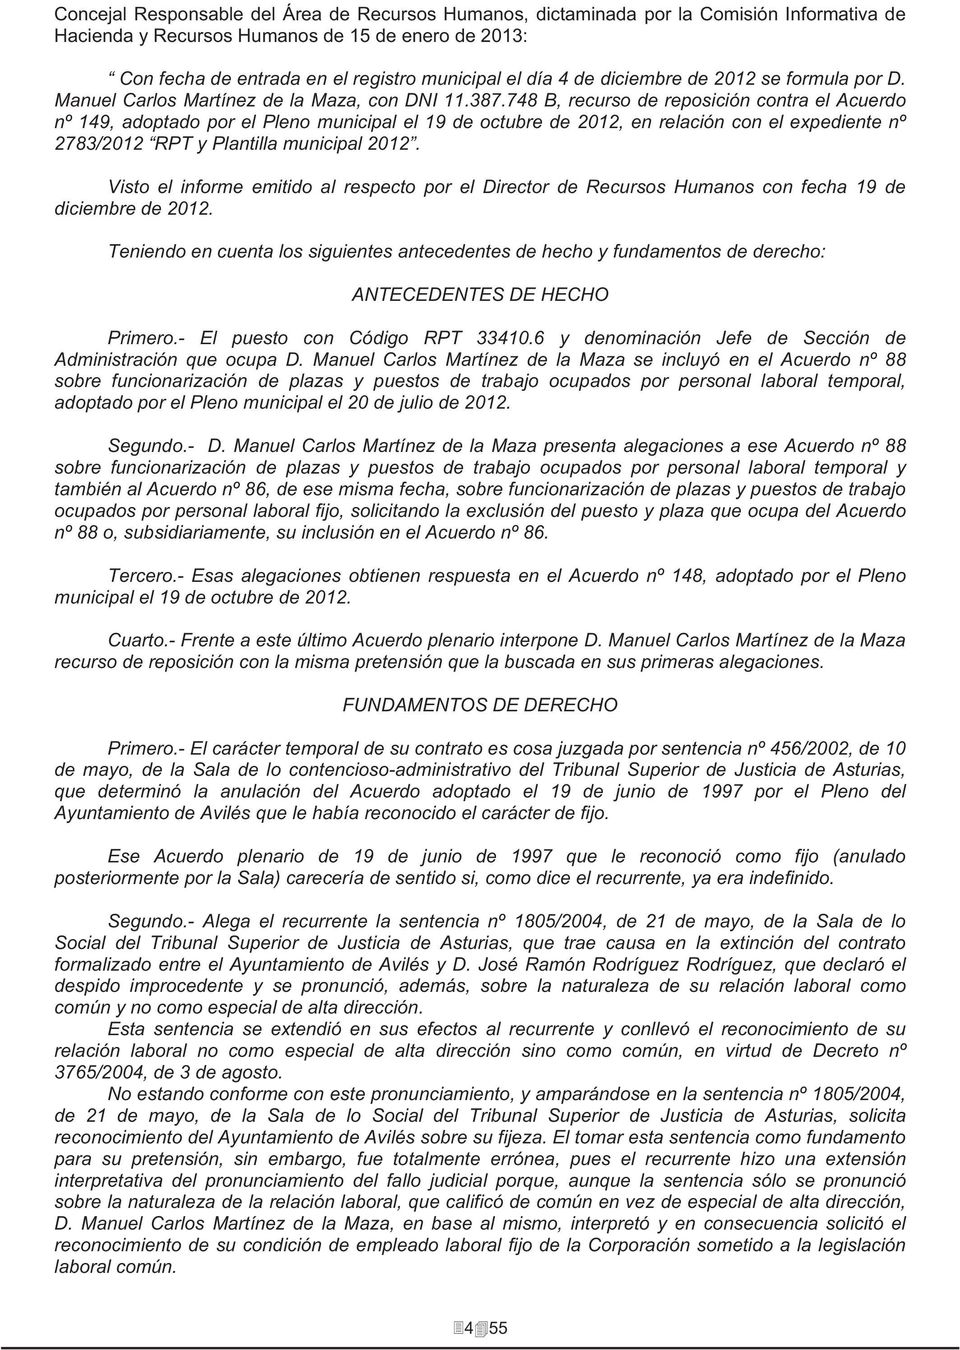 748 B, recurso de reposición contra el Acuerdo nº 149, adoptado por el Pleno municipal el 19 de octubre de 2012, en relación con el expediente nº 2783/2012 RPT y Plantilla municipal 2012.